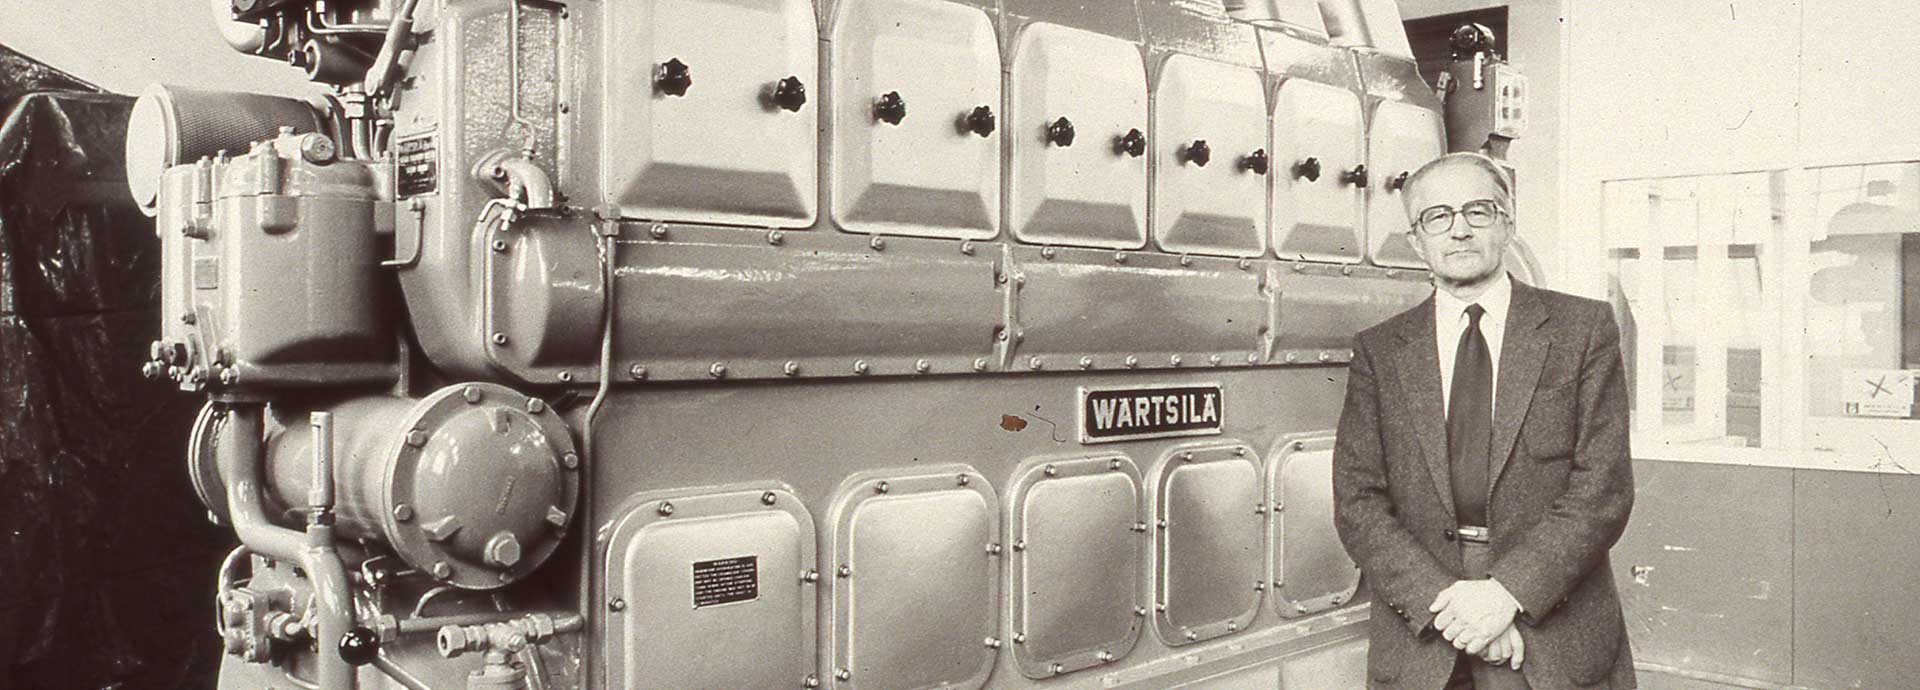 Wärtsilä 14 and Wilmer Wahlstedt